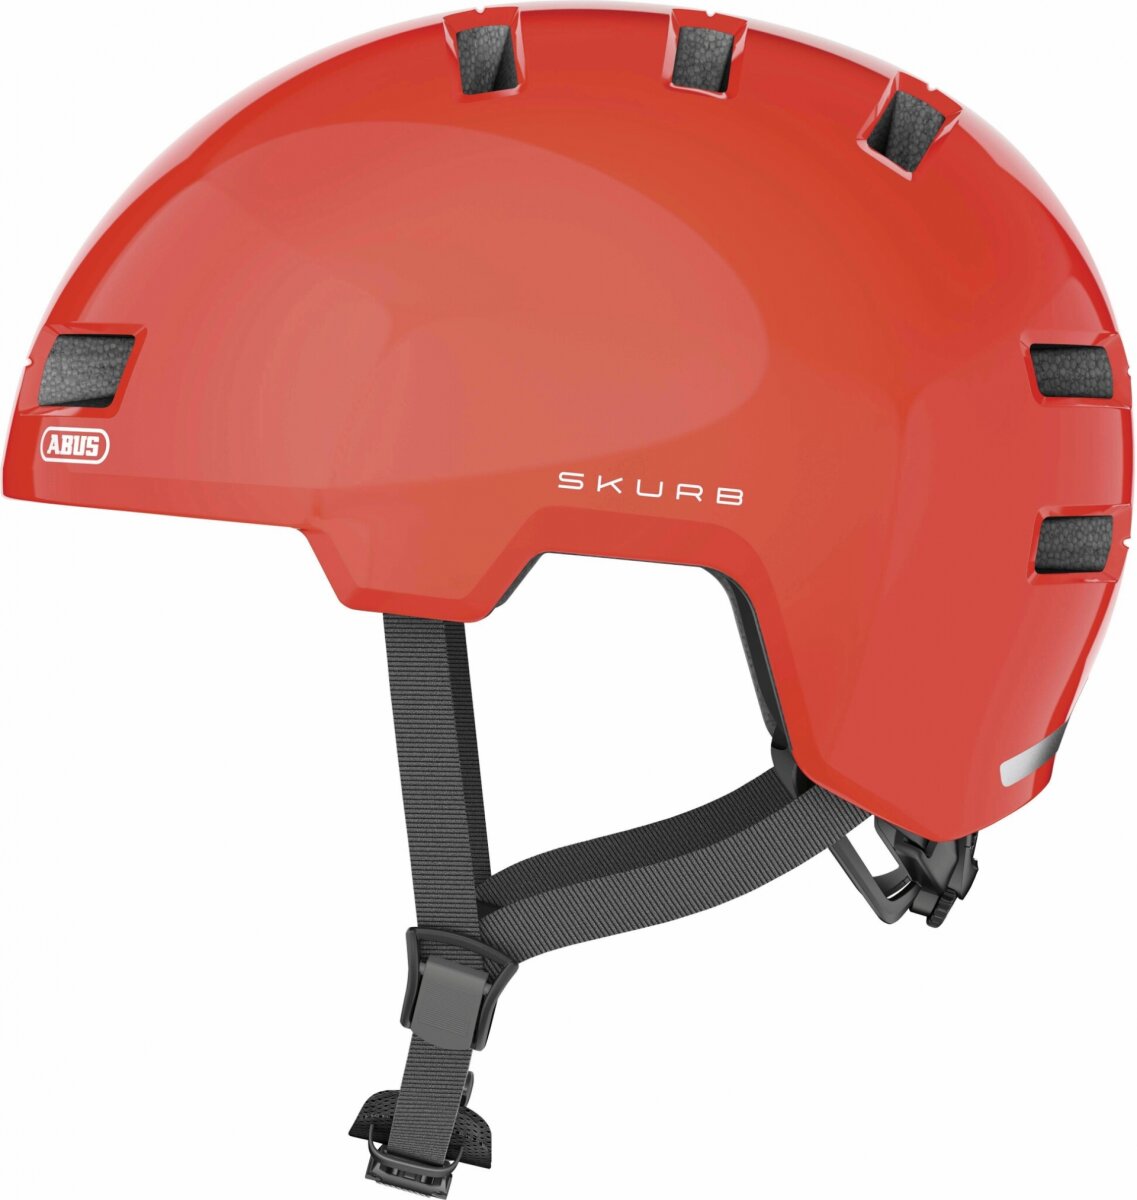 Шлем велосипедный Abus Skurb (Signal Orange) 403811, 403798, 403804